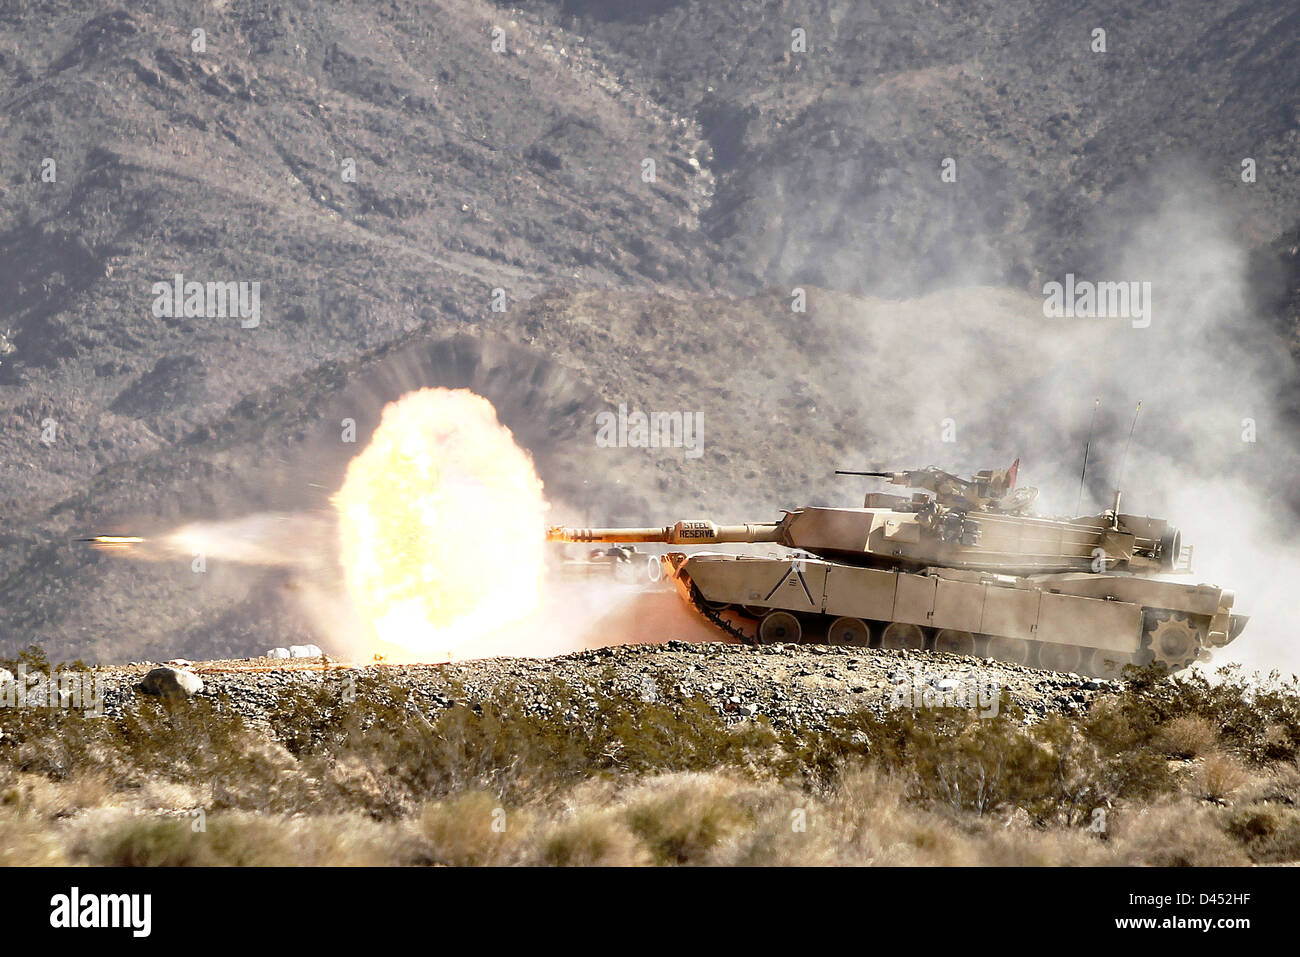 Une Armée US M1A2 Abrams tank tire un sabot au cours de rondes de qualifications tir annuel le 17 février 2013 dans Twentynine Palms, CA. Banque D'Images